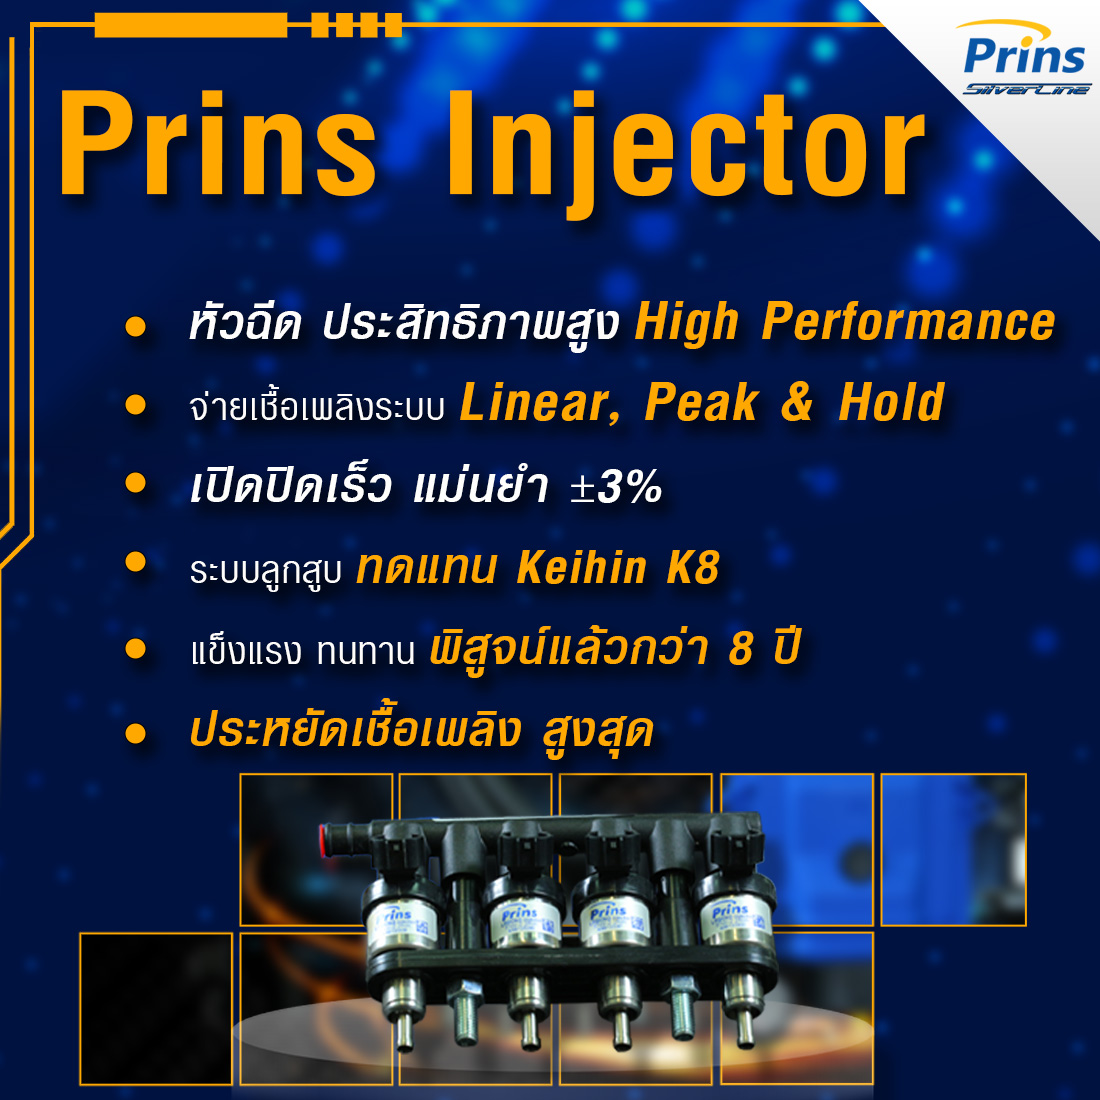 02-3 รางหัวฉีด Prins Injector